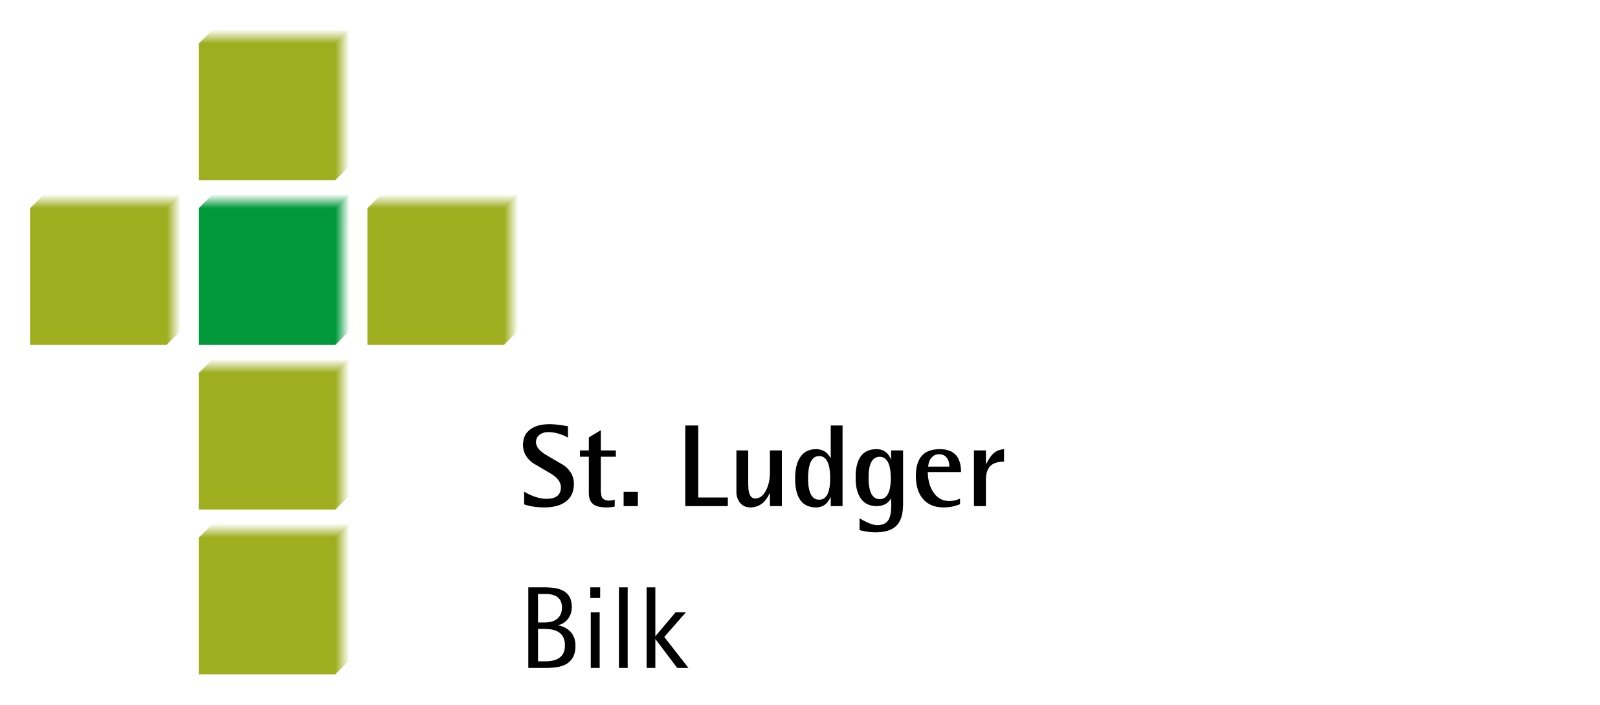 Ludger (c) kath. Kirchegemeinde St. Bonifatius Düsseldorf